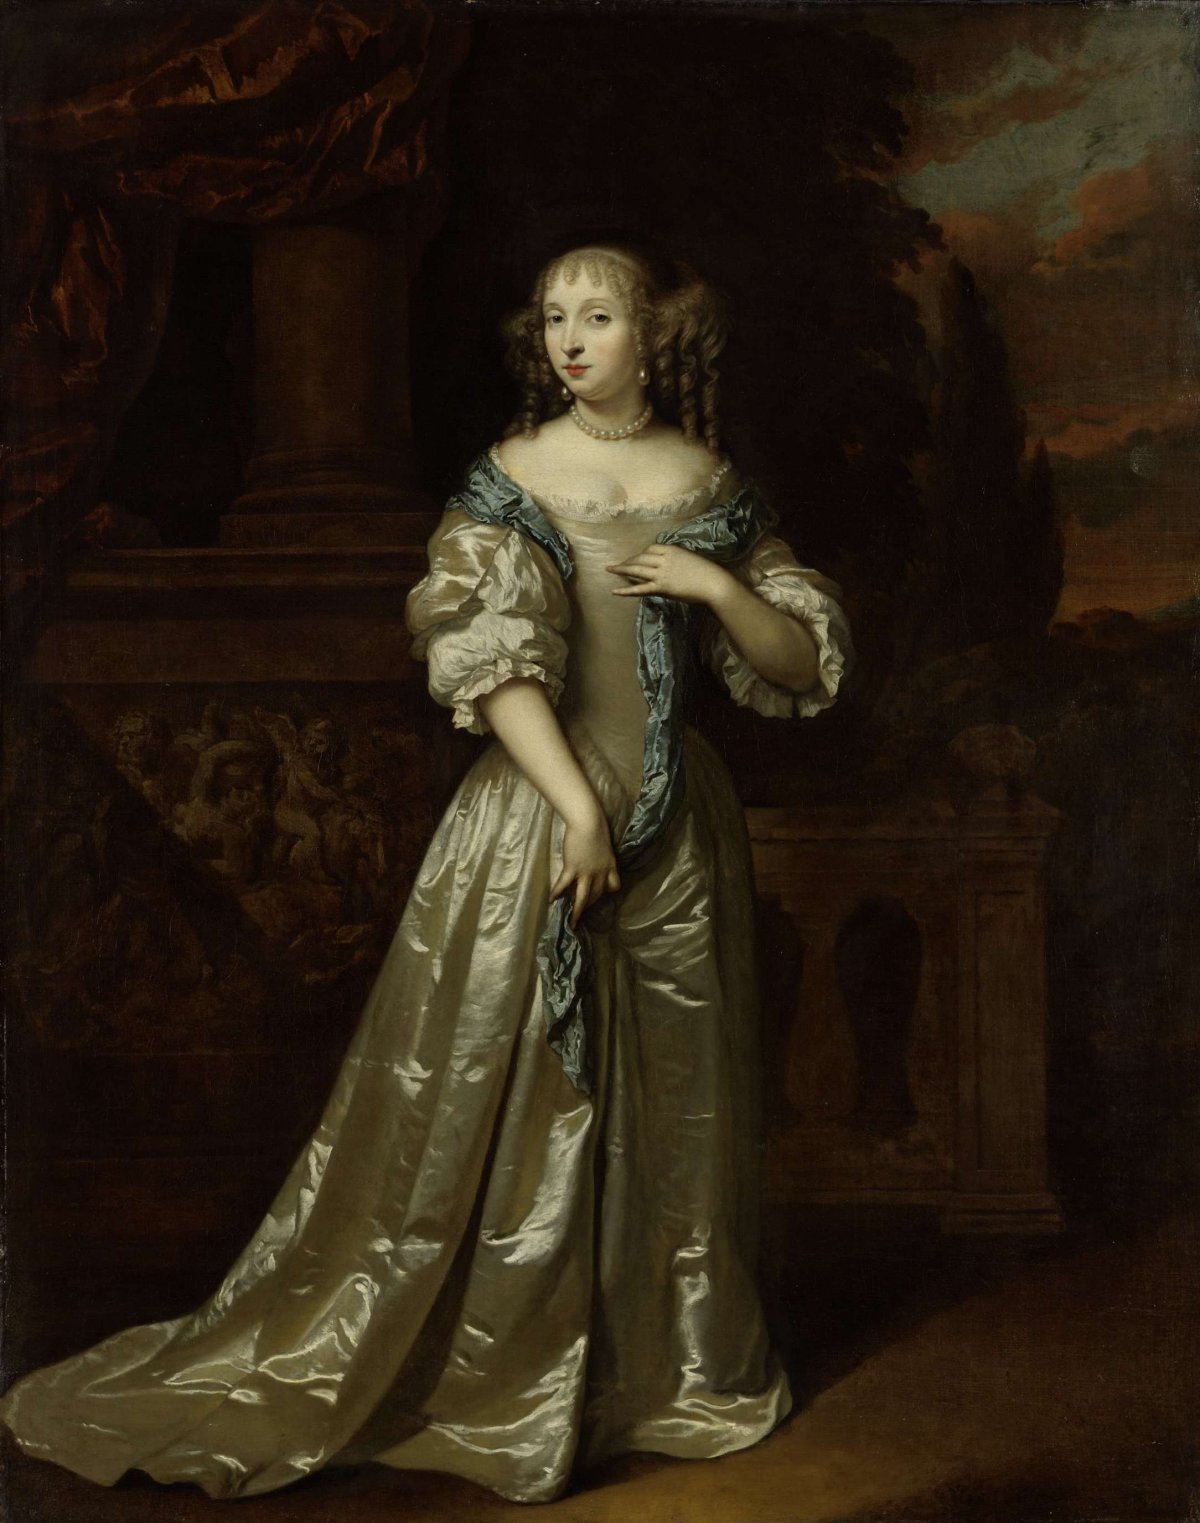 Portrait of Philippina Staunton, Wife of Roelof van Arkel (1632-1709), lord of Broeckhuijsen, Caspar Netscher, 1668